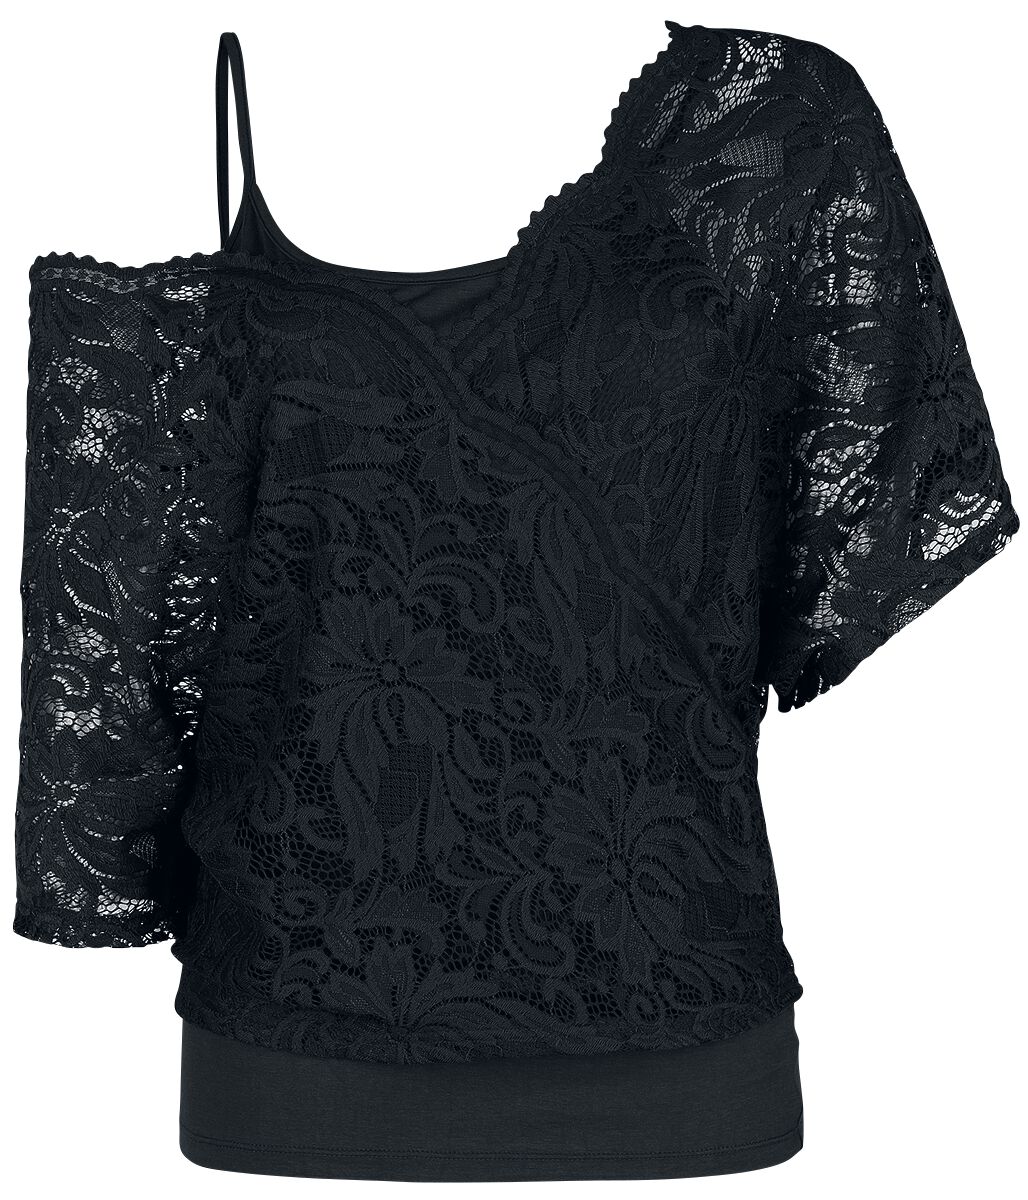 Black Premium by EMP T-Shirt - When The Heart Rules The Mind - S bis 4XL - für Damen - Größe 4XL - schwarz